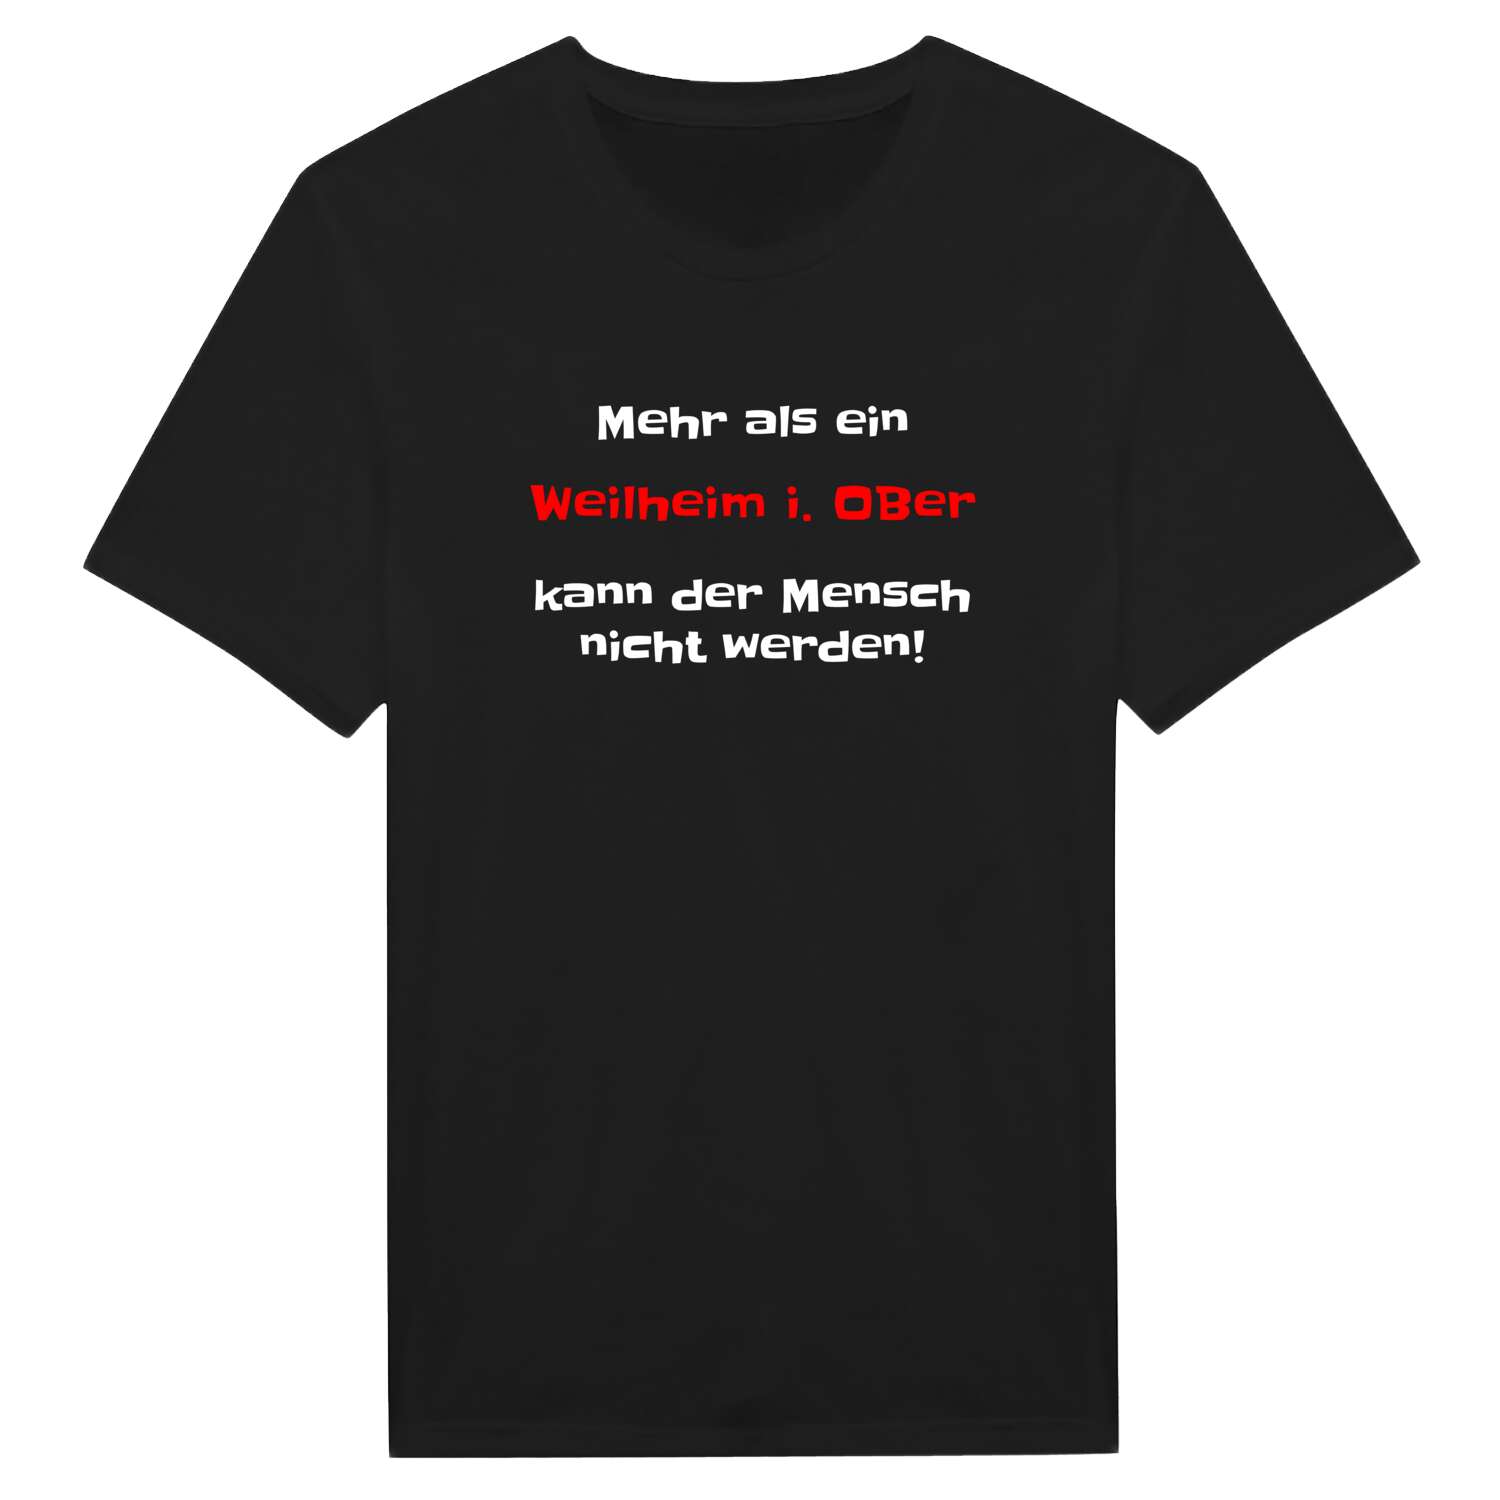 Weilheim i. OB T-Shirt »Mehr als ein«